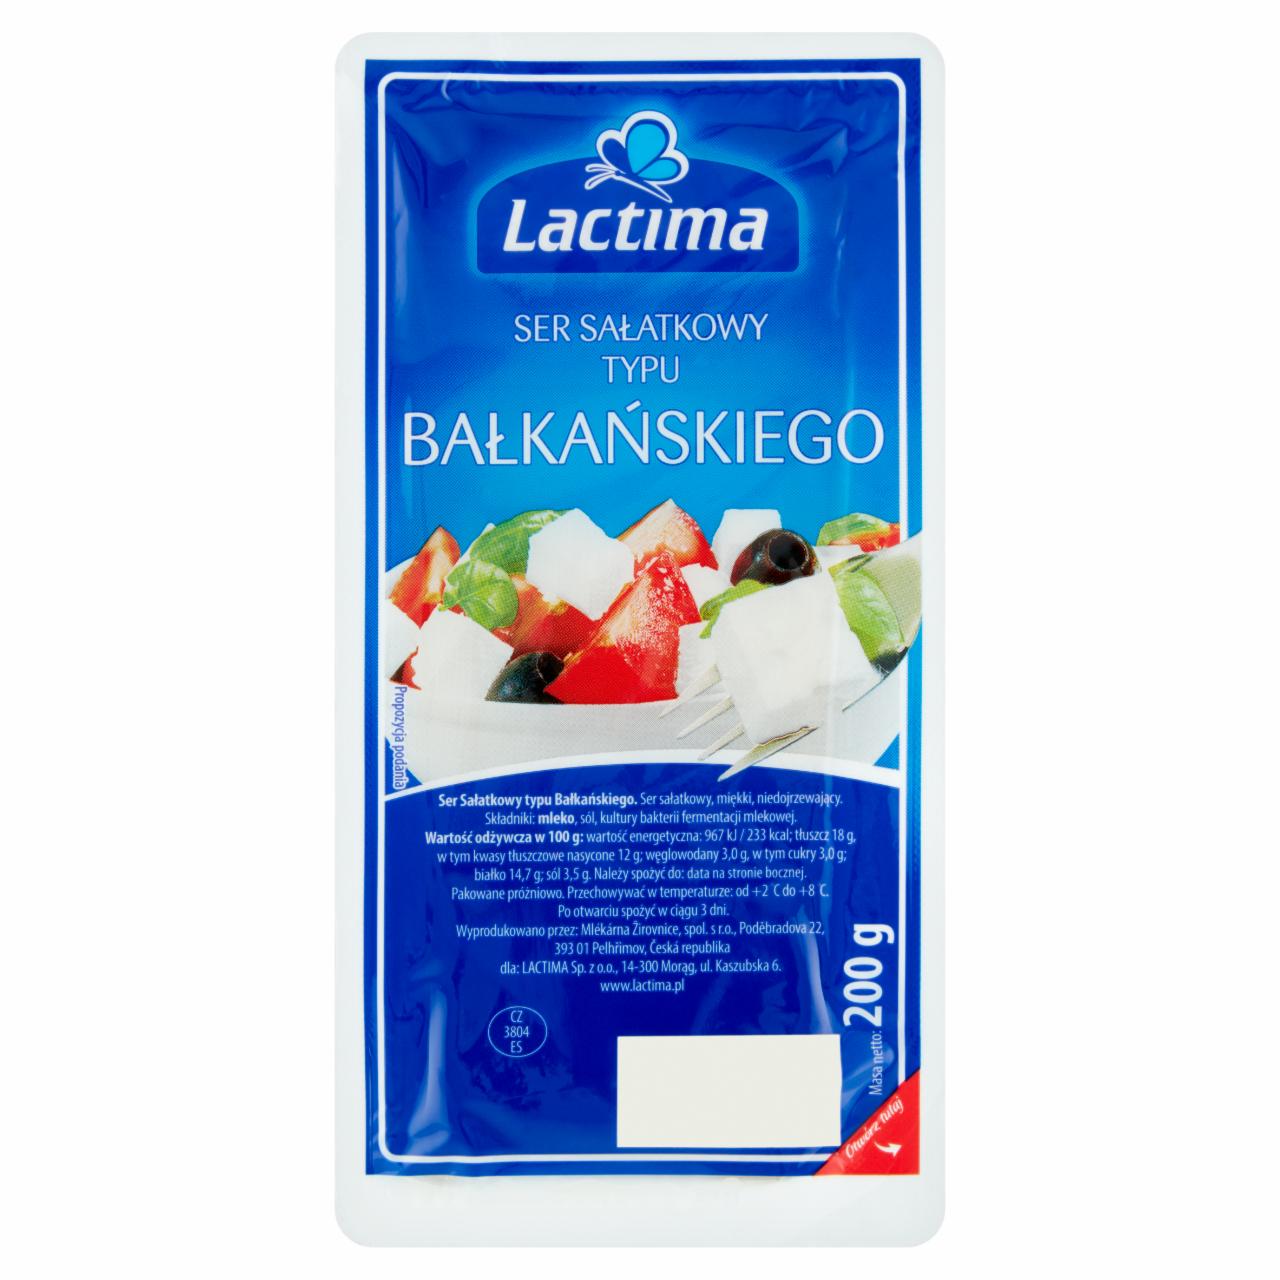 Zdjęcia - Lactima Ser sałatkowy typu Bałkańskiego 200 g